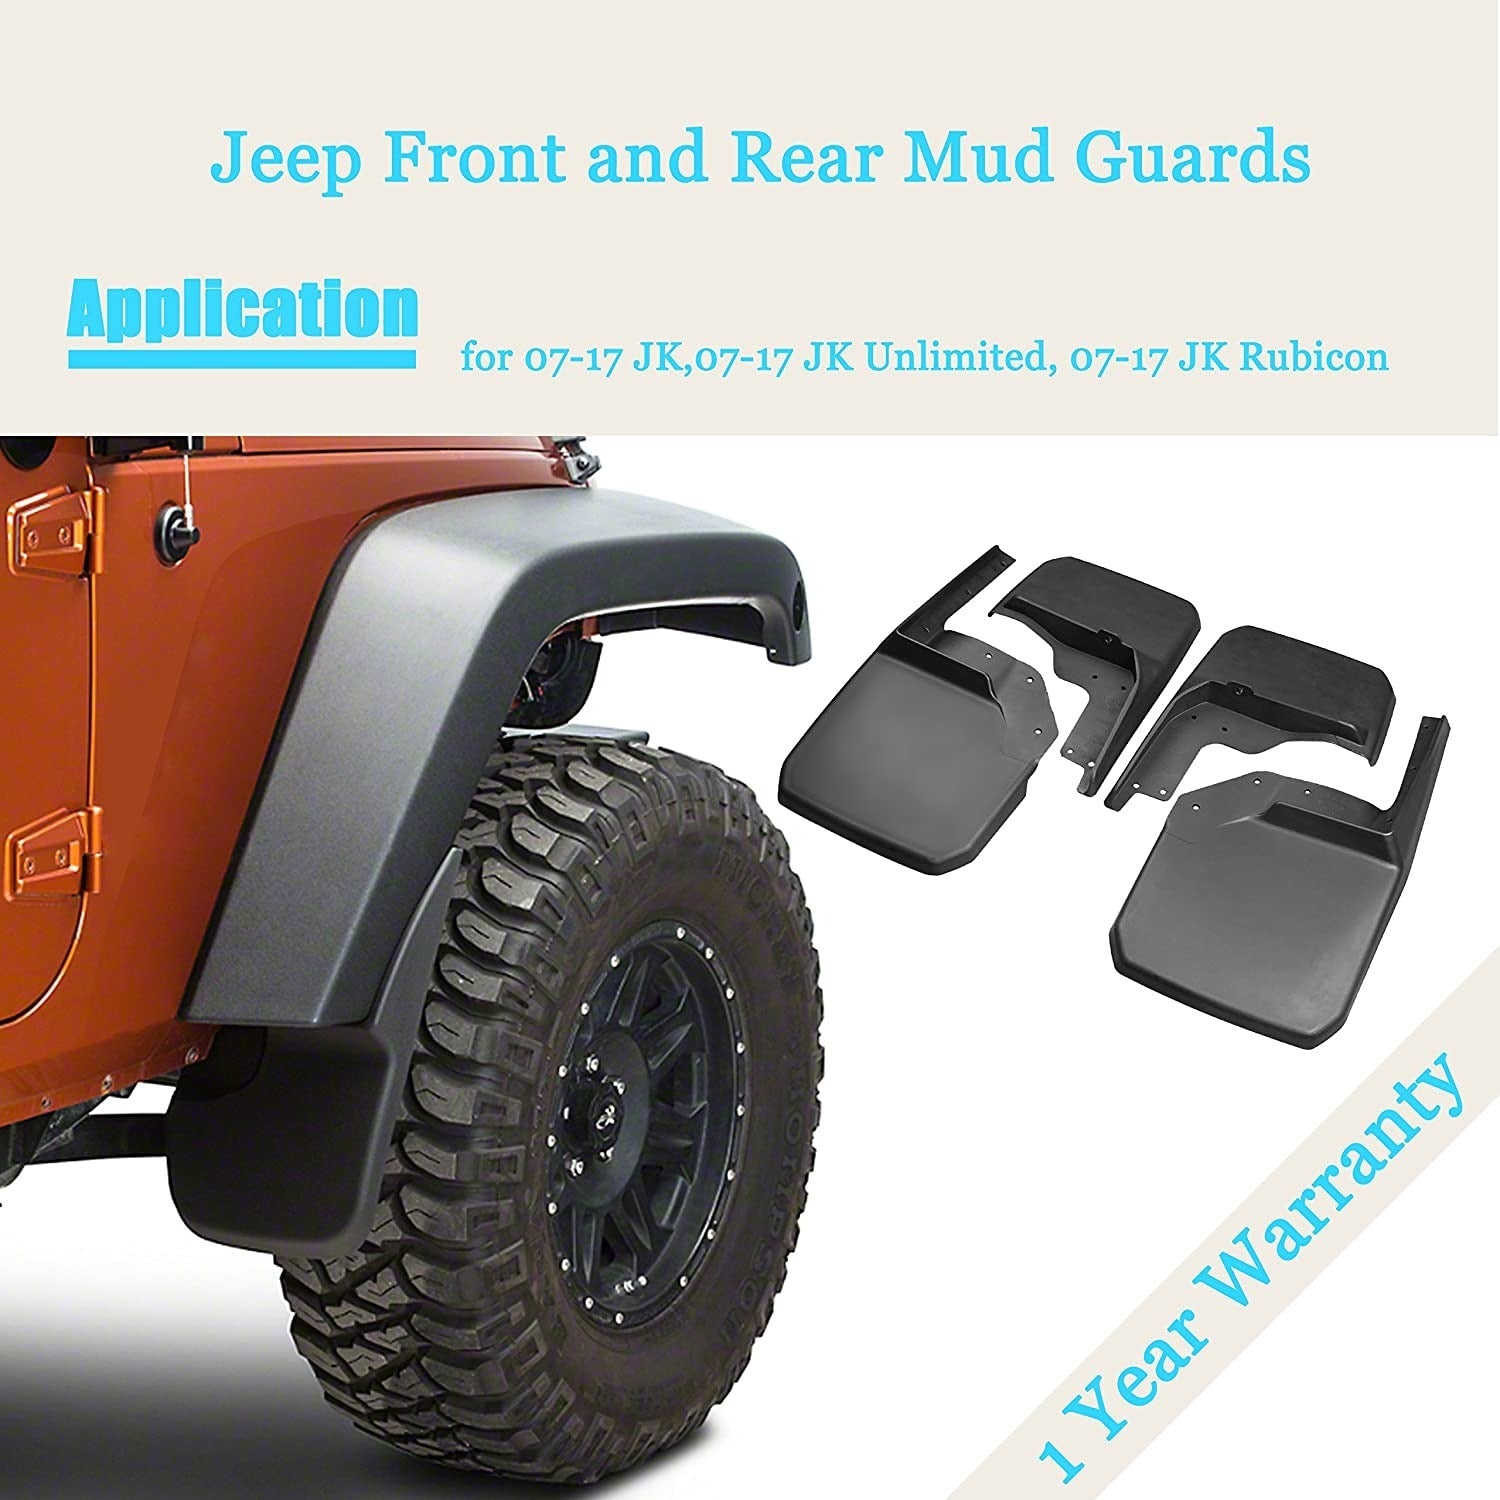 Mud Flap/Splash Guard for Jeep Wrangler JK – OffGrid Store